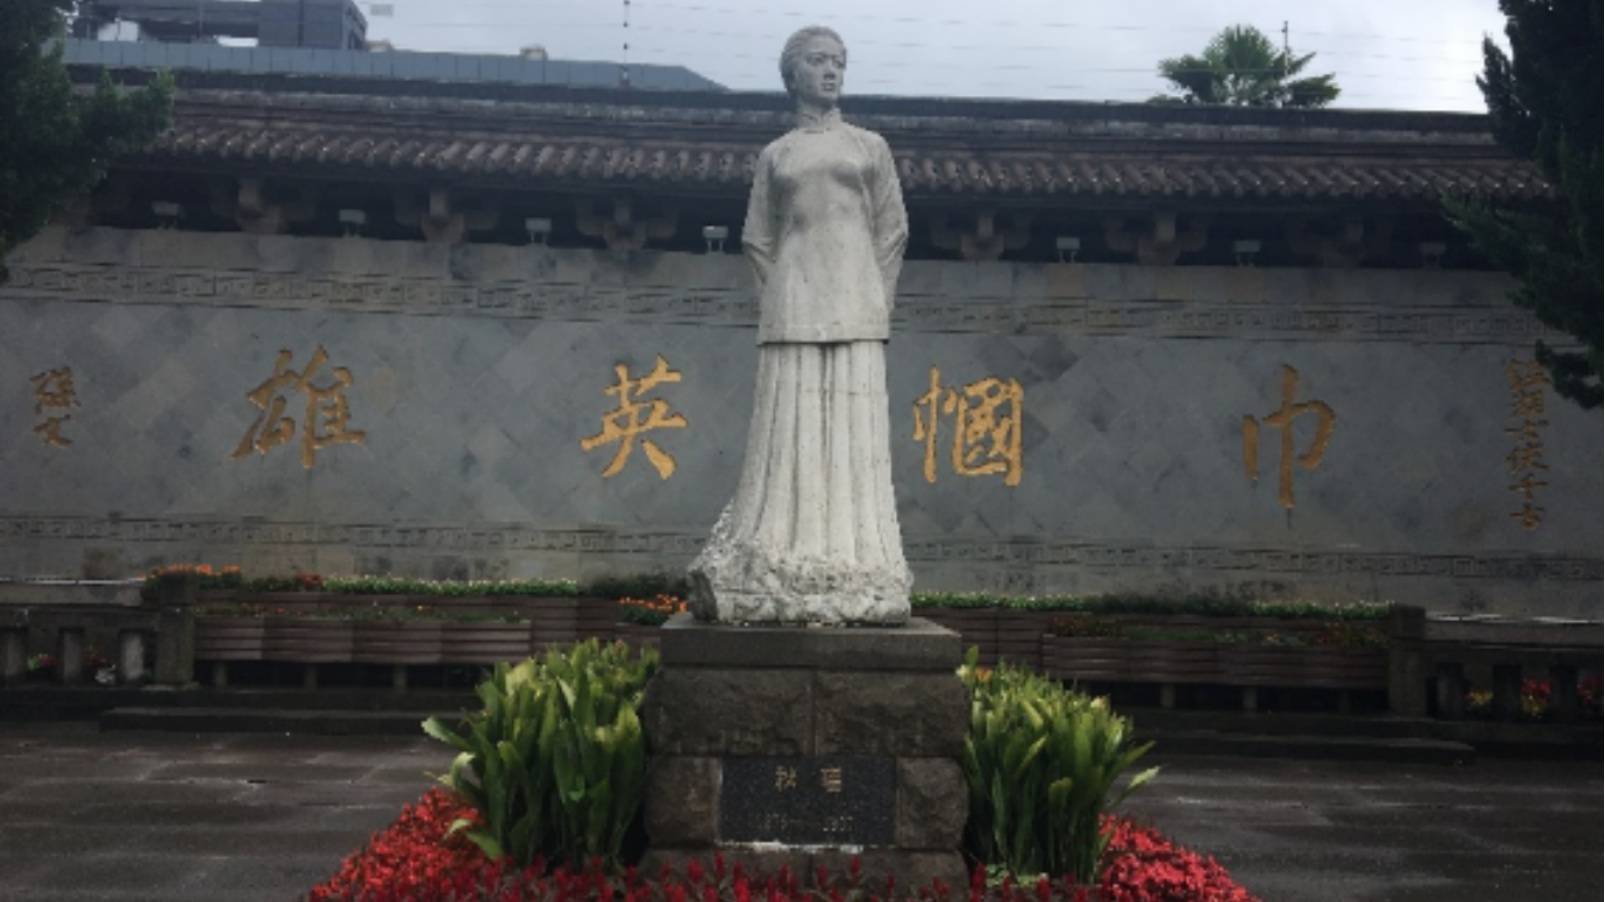 Qiu Jin Monument, photograph by Karen Zhang (2019)